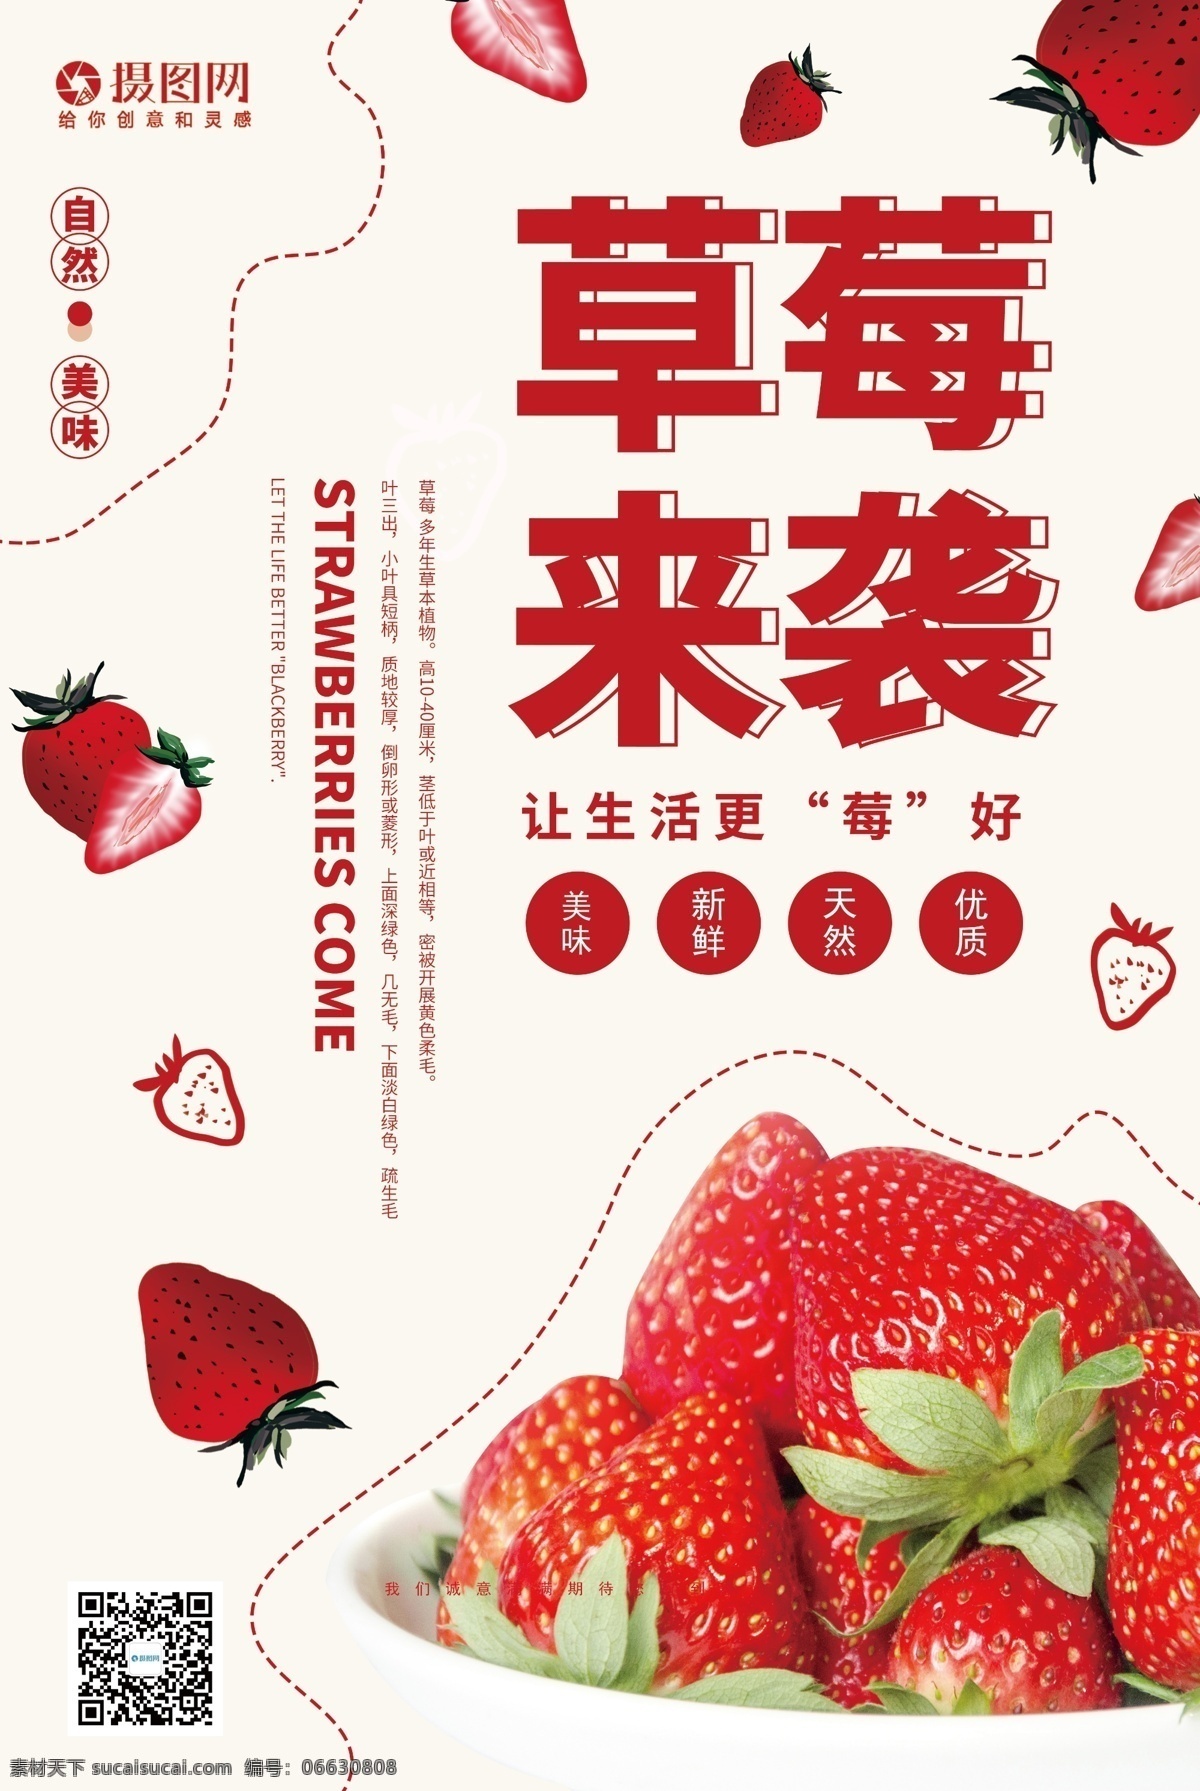 新鲜 草莓 促销 宣传海报 新鲜草莓促销 新鲜草莓 水果 海报 草莓季节 水果促销 水果店促销